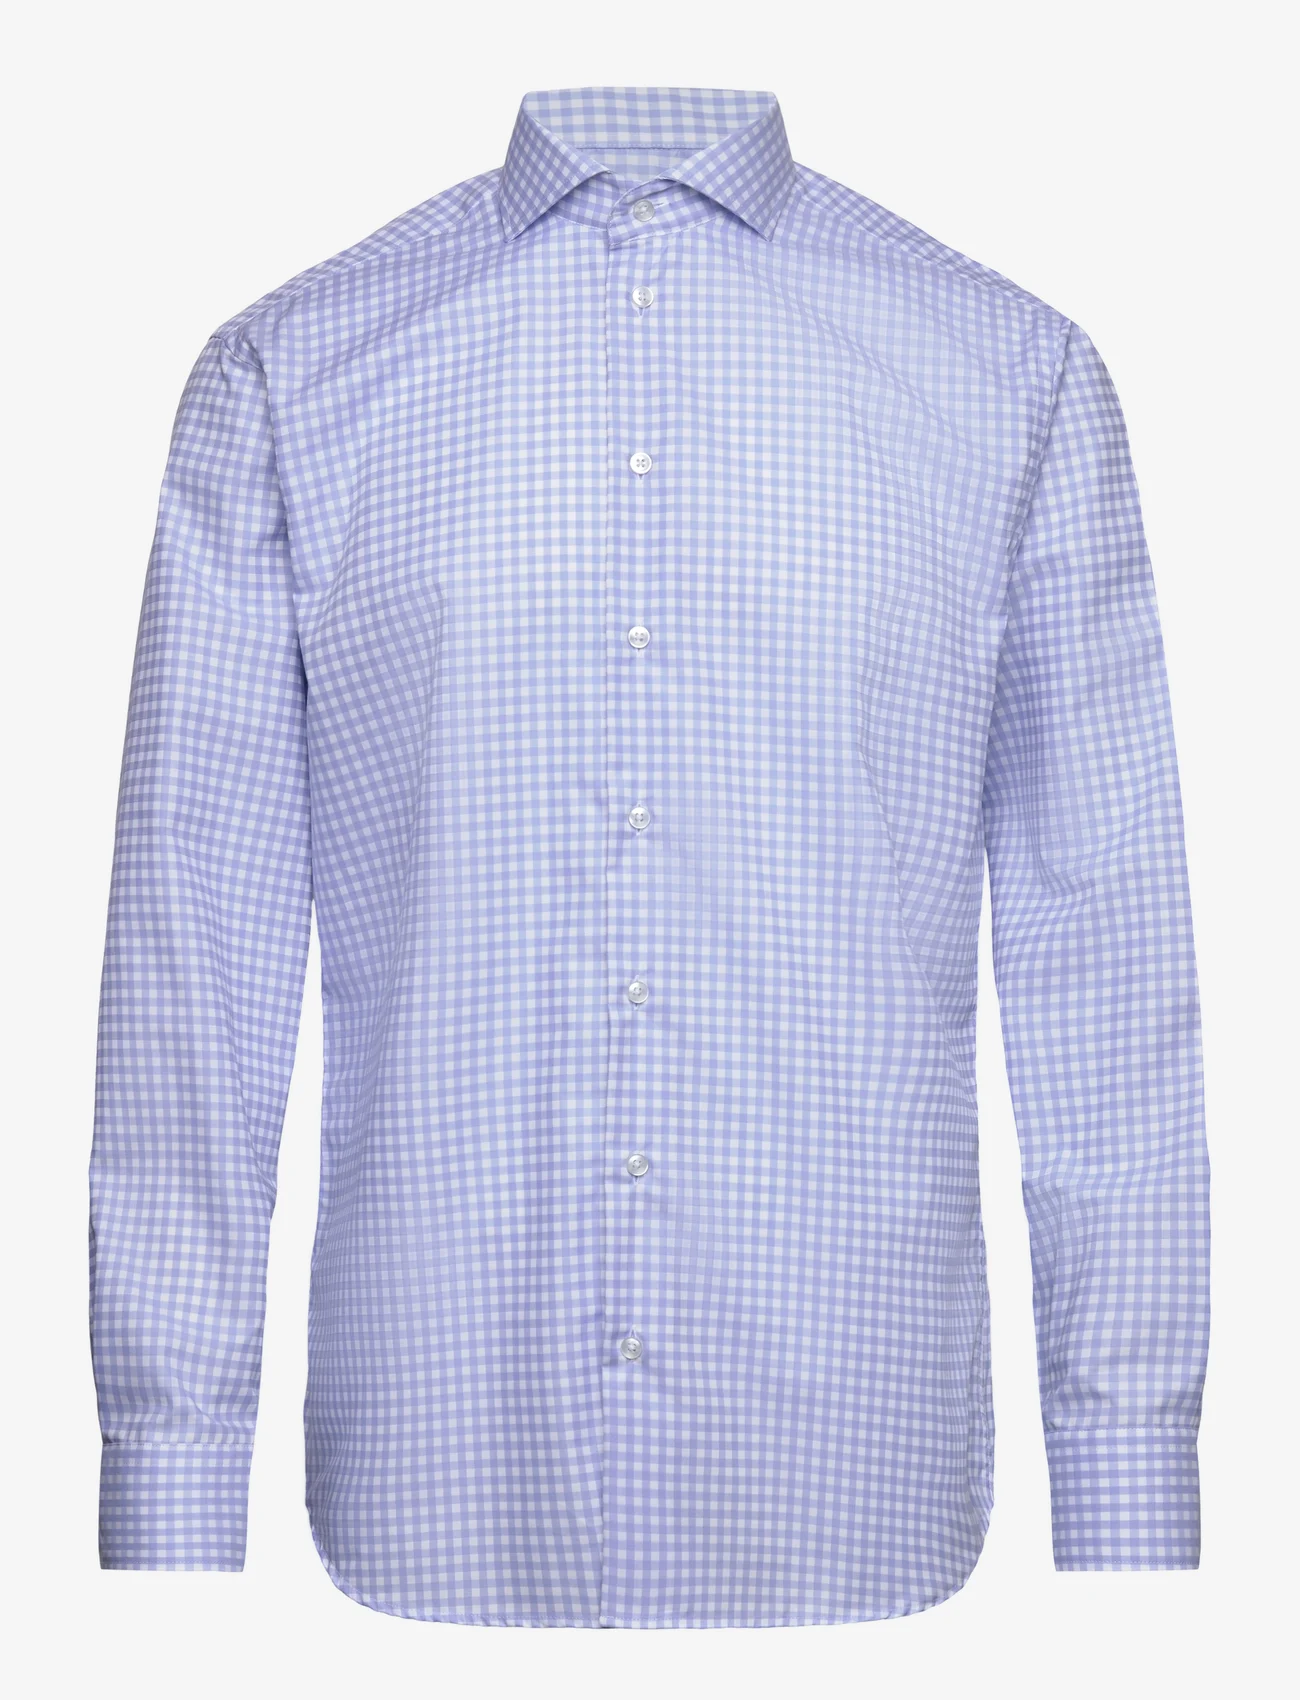 Bosweel Shirts Est. 1937 - Regular fit Mens shirt - business skjorter - light blue - 0